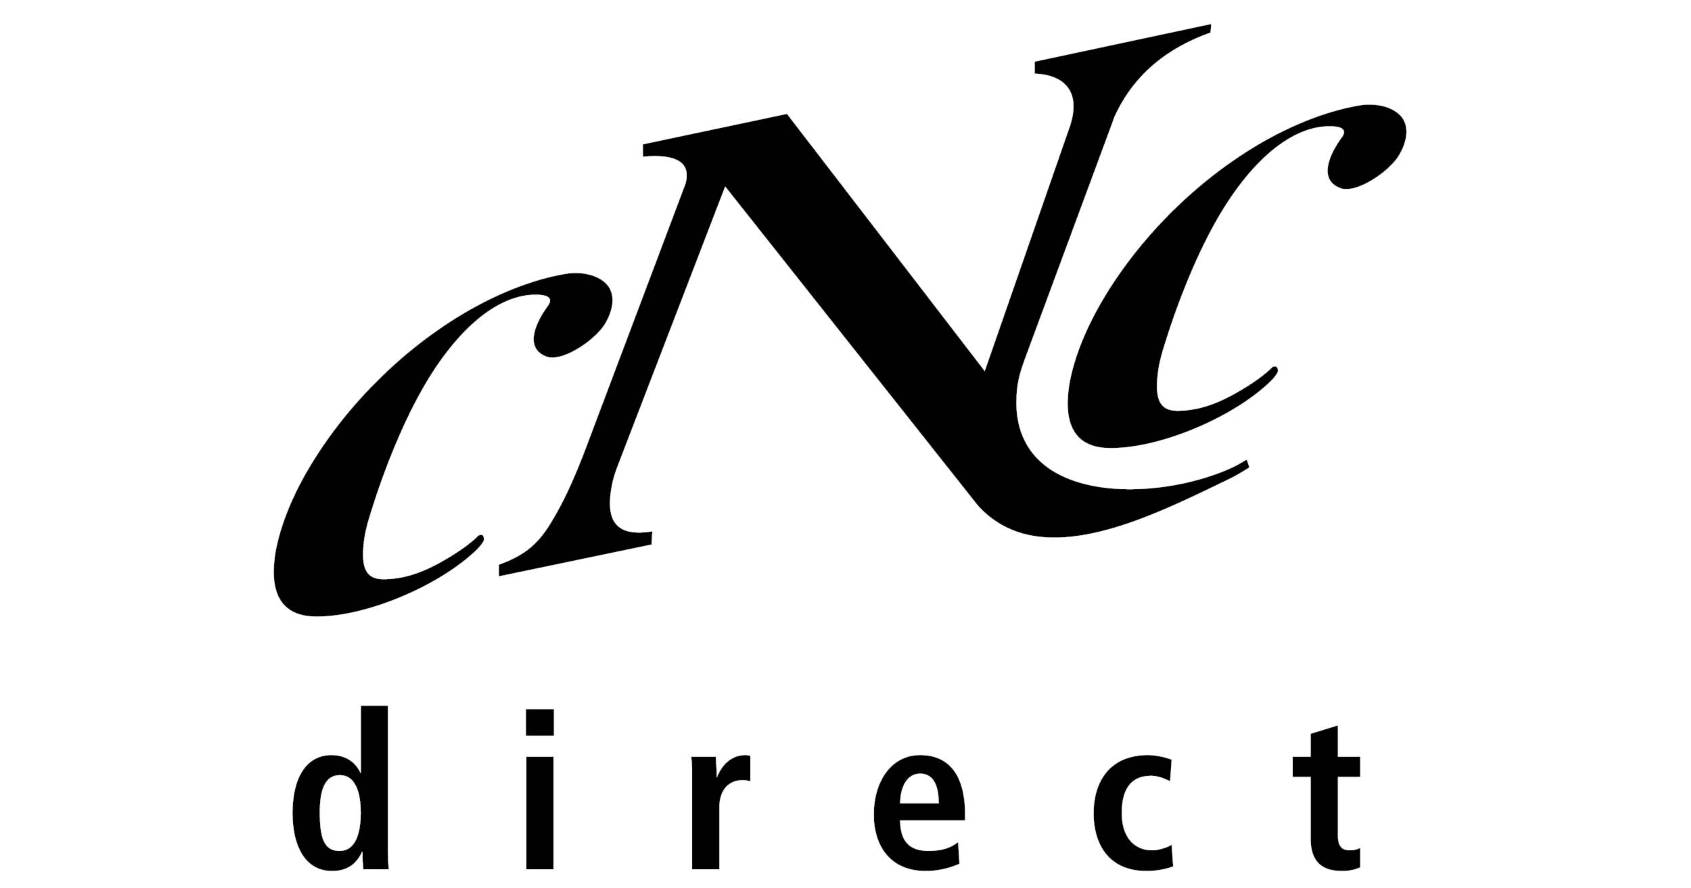 Zum CNC-DirectShop